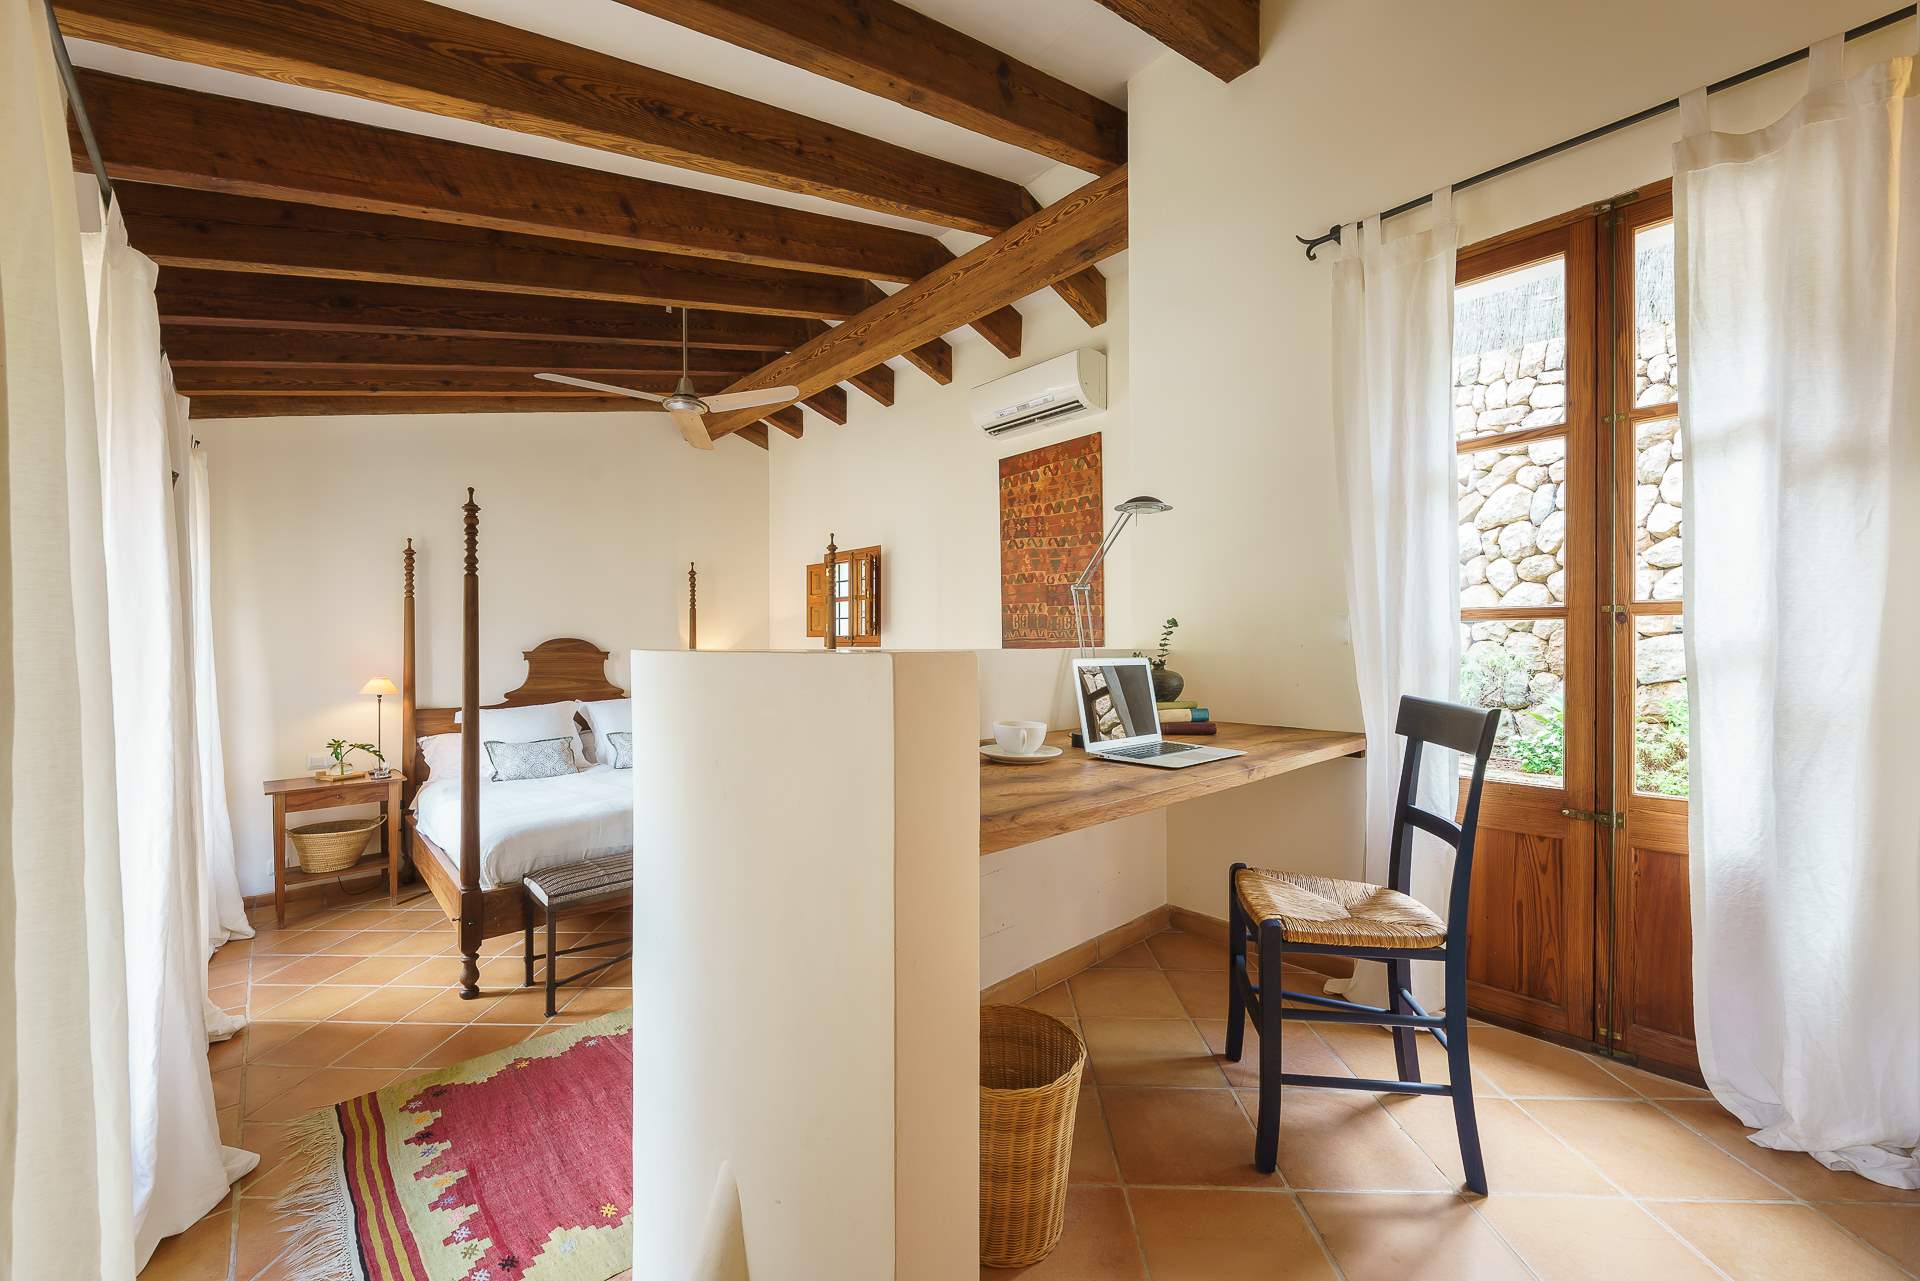 Sa Tanca, 3 Bedroom Rental, 3 bedroom villa in Soller & Deia, Majorca Photo #28